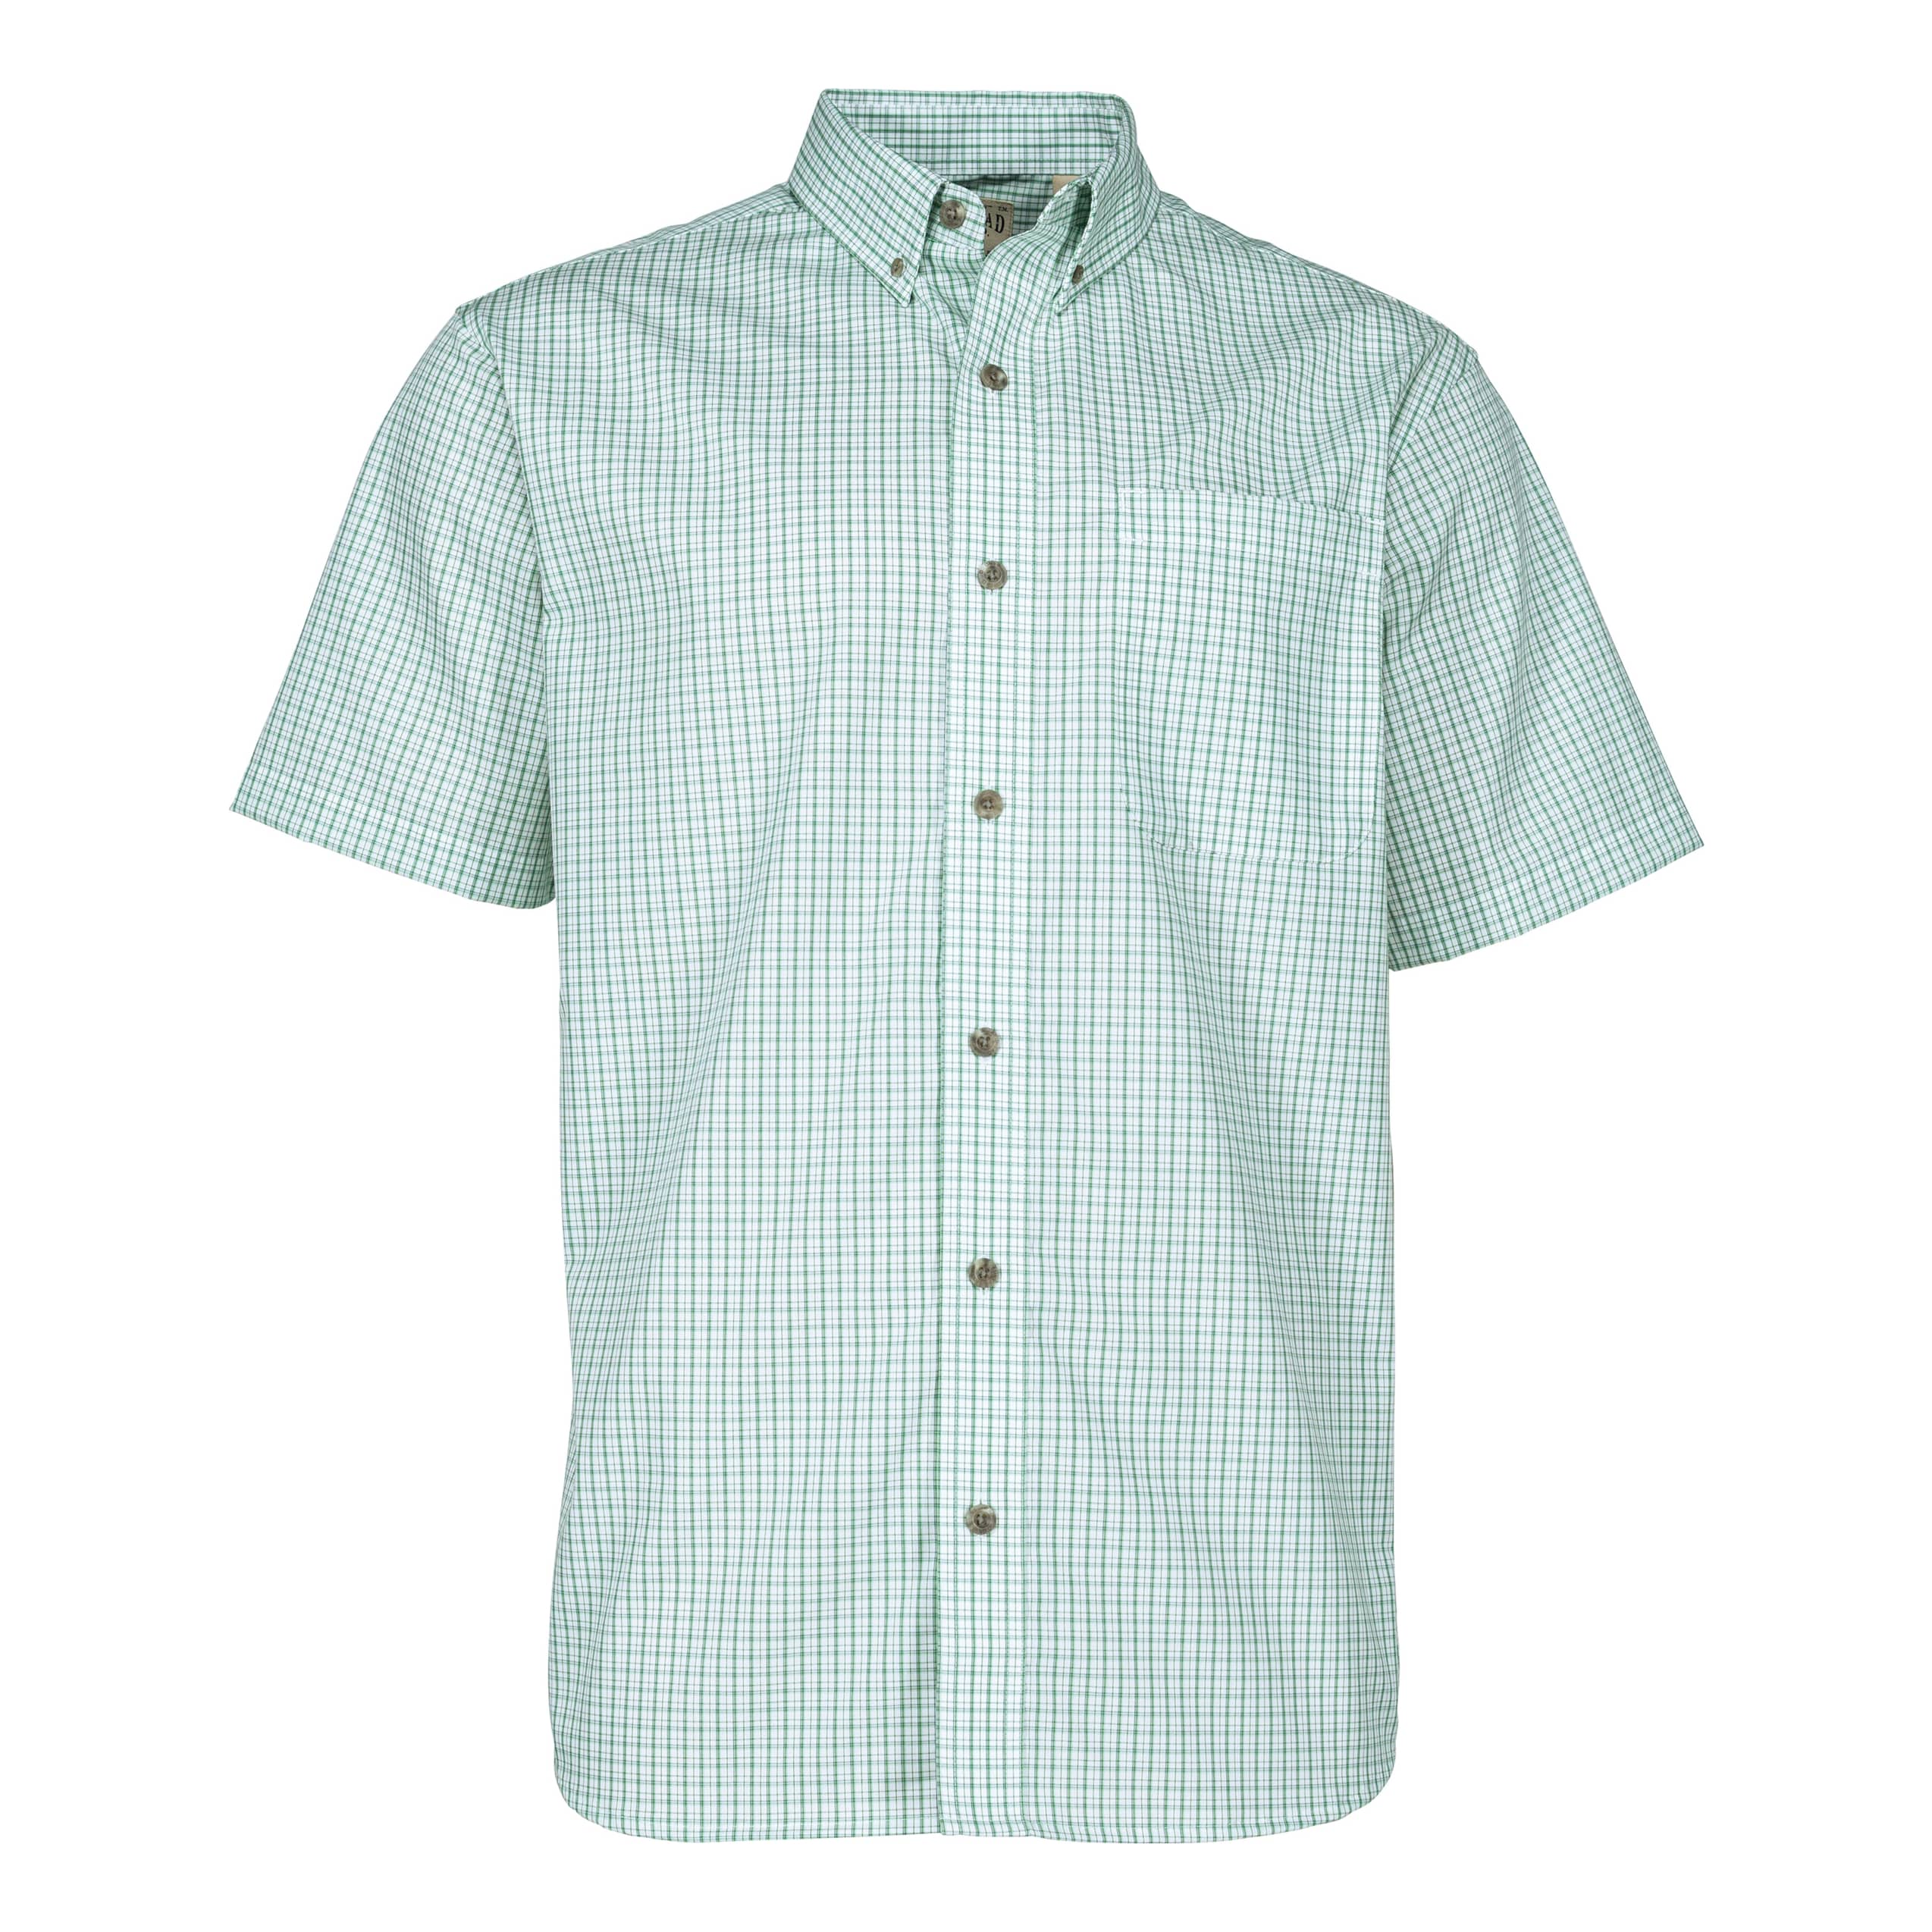 RedHead® Men’s Wrinkle-Free Plaid Shirt - Green Turquoise Plaid